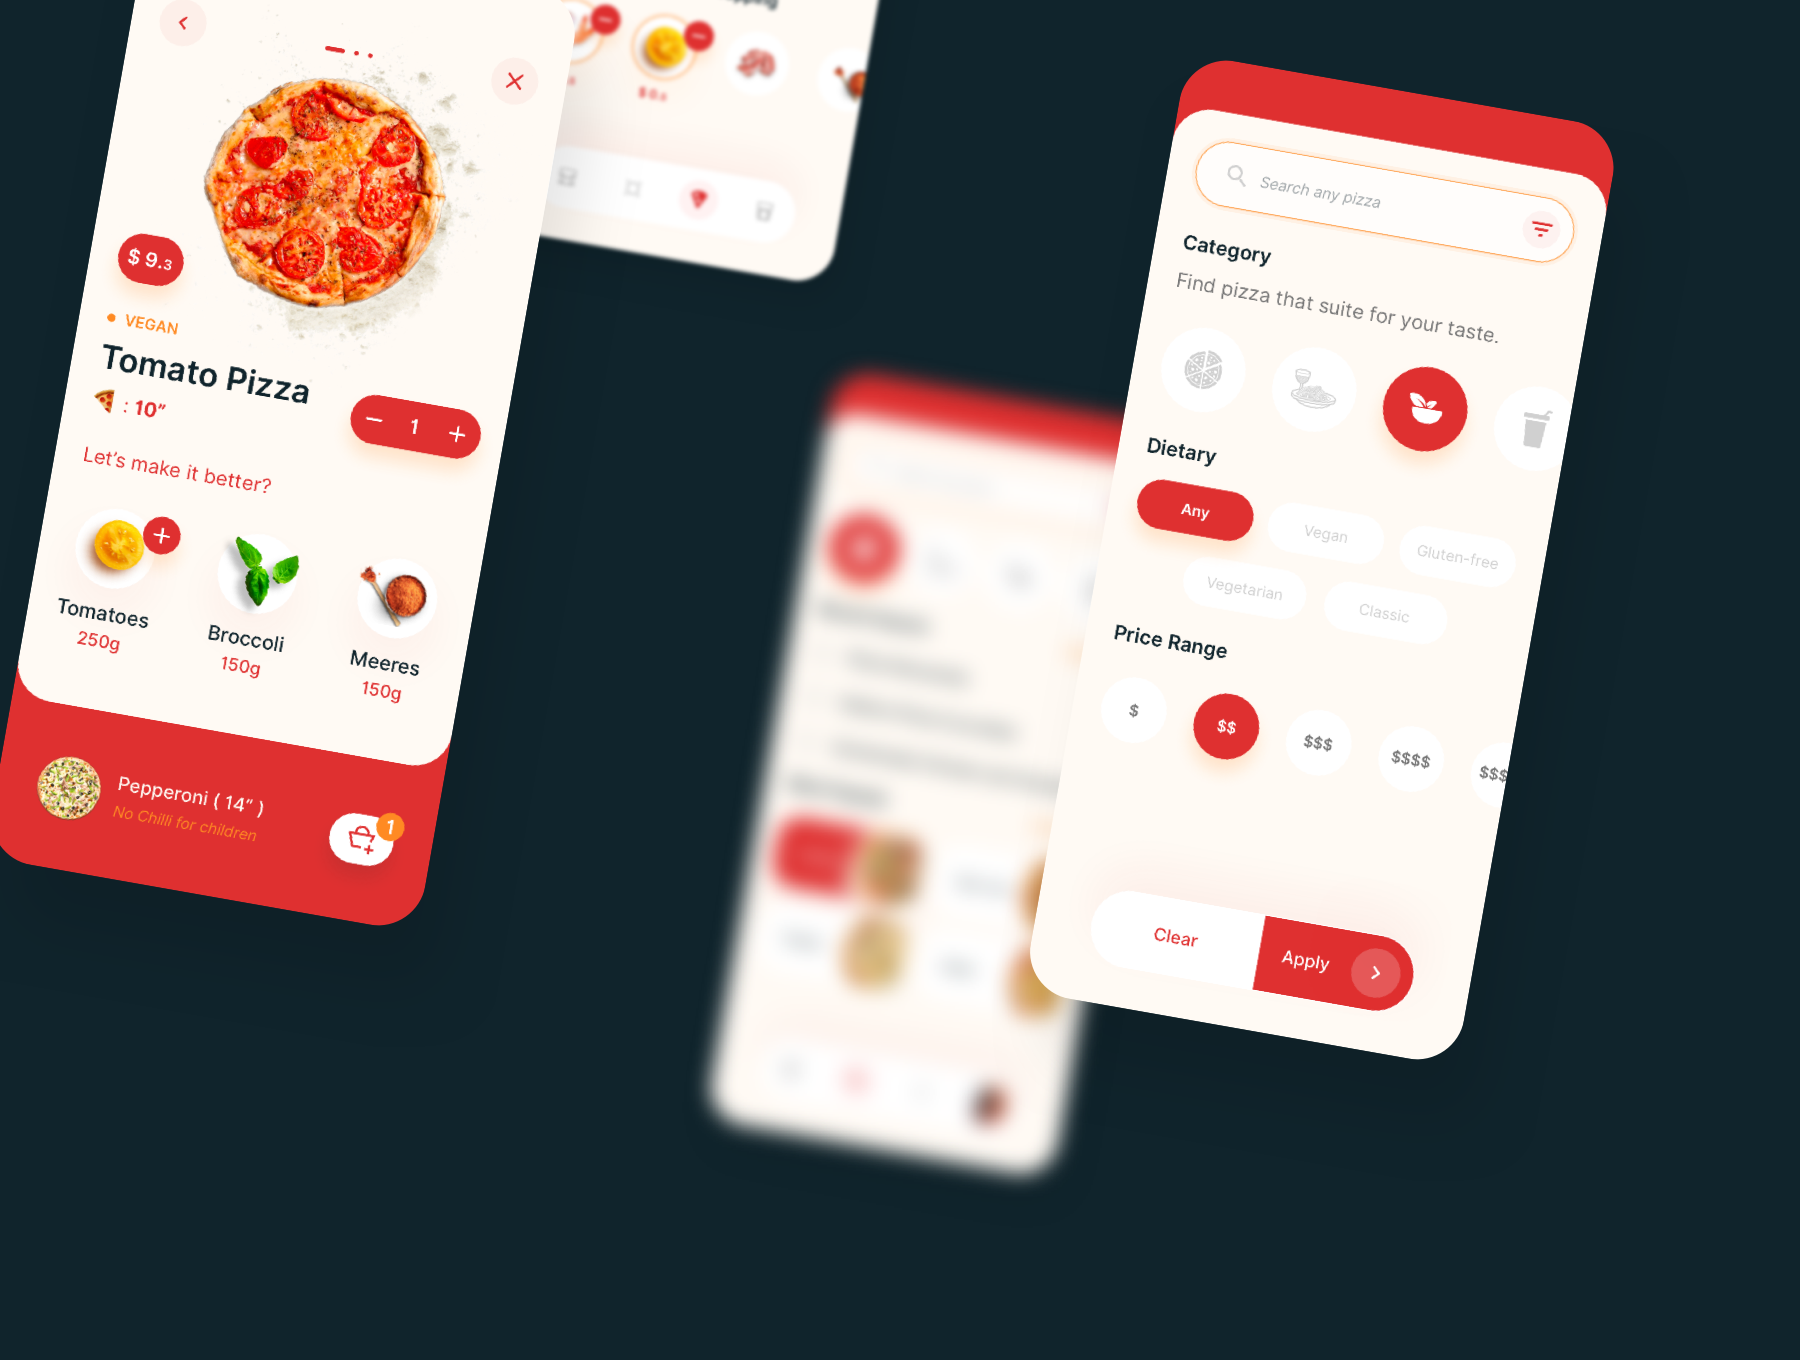 PIZZA App UI Kit 美食外卖披萨应用程序UI套件-UI/UX-到位啦UI